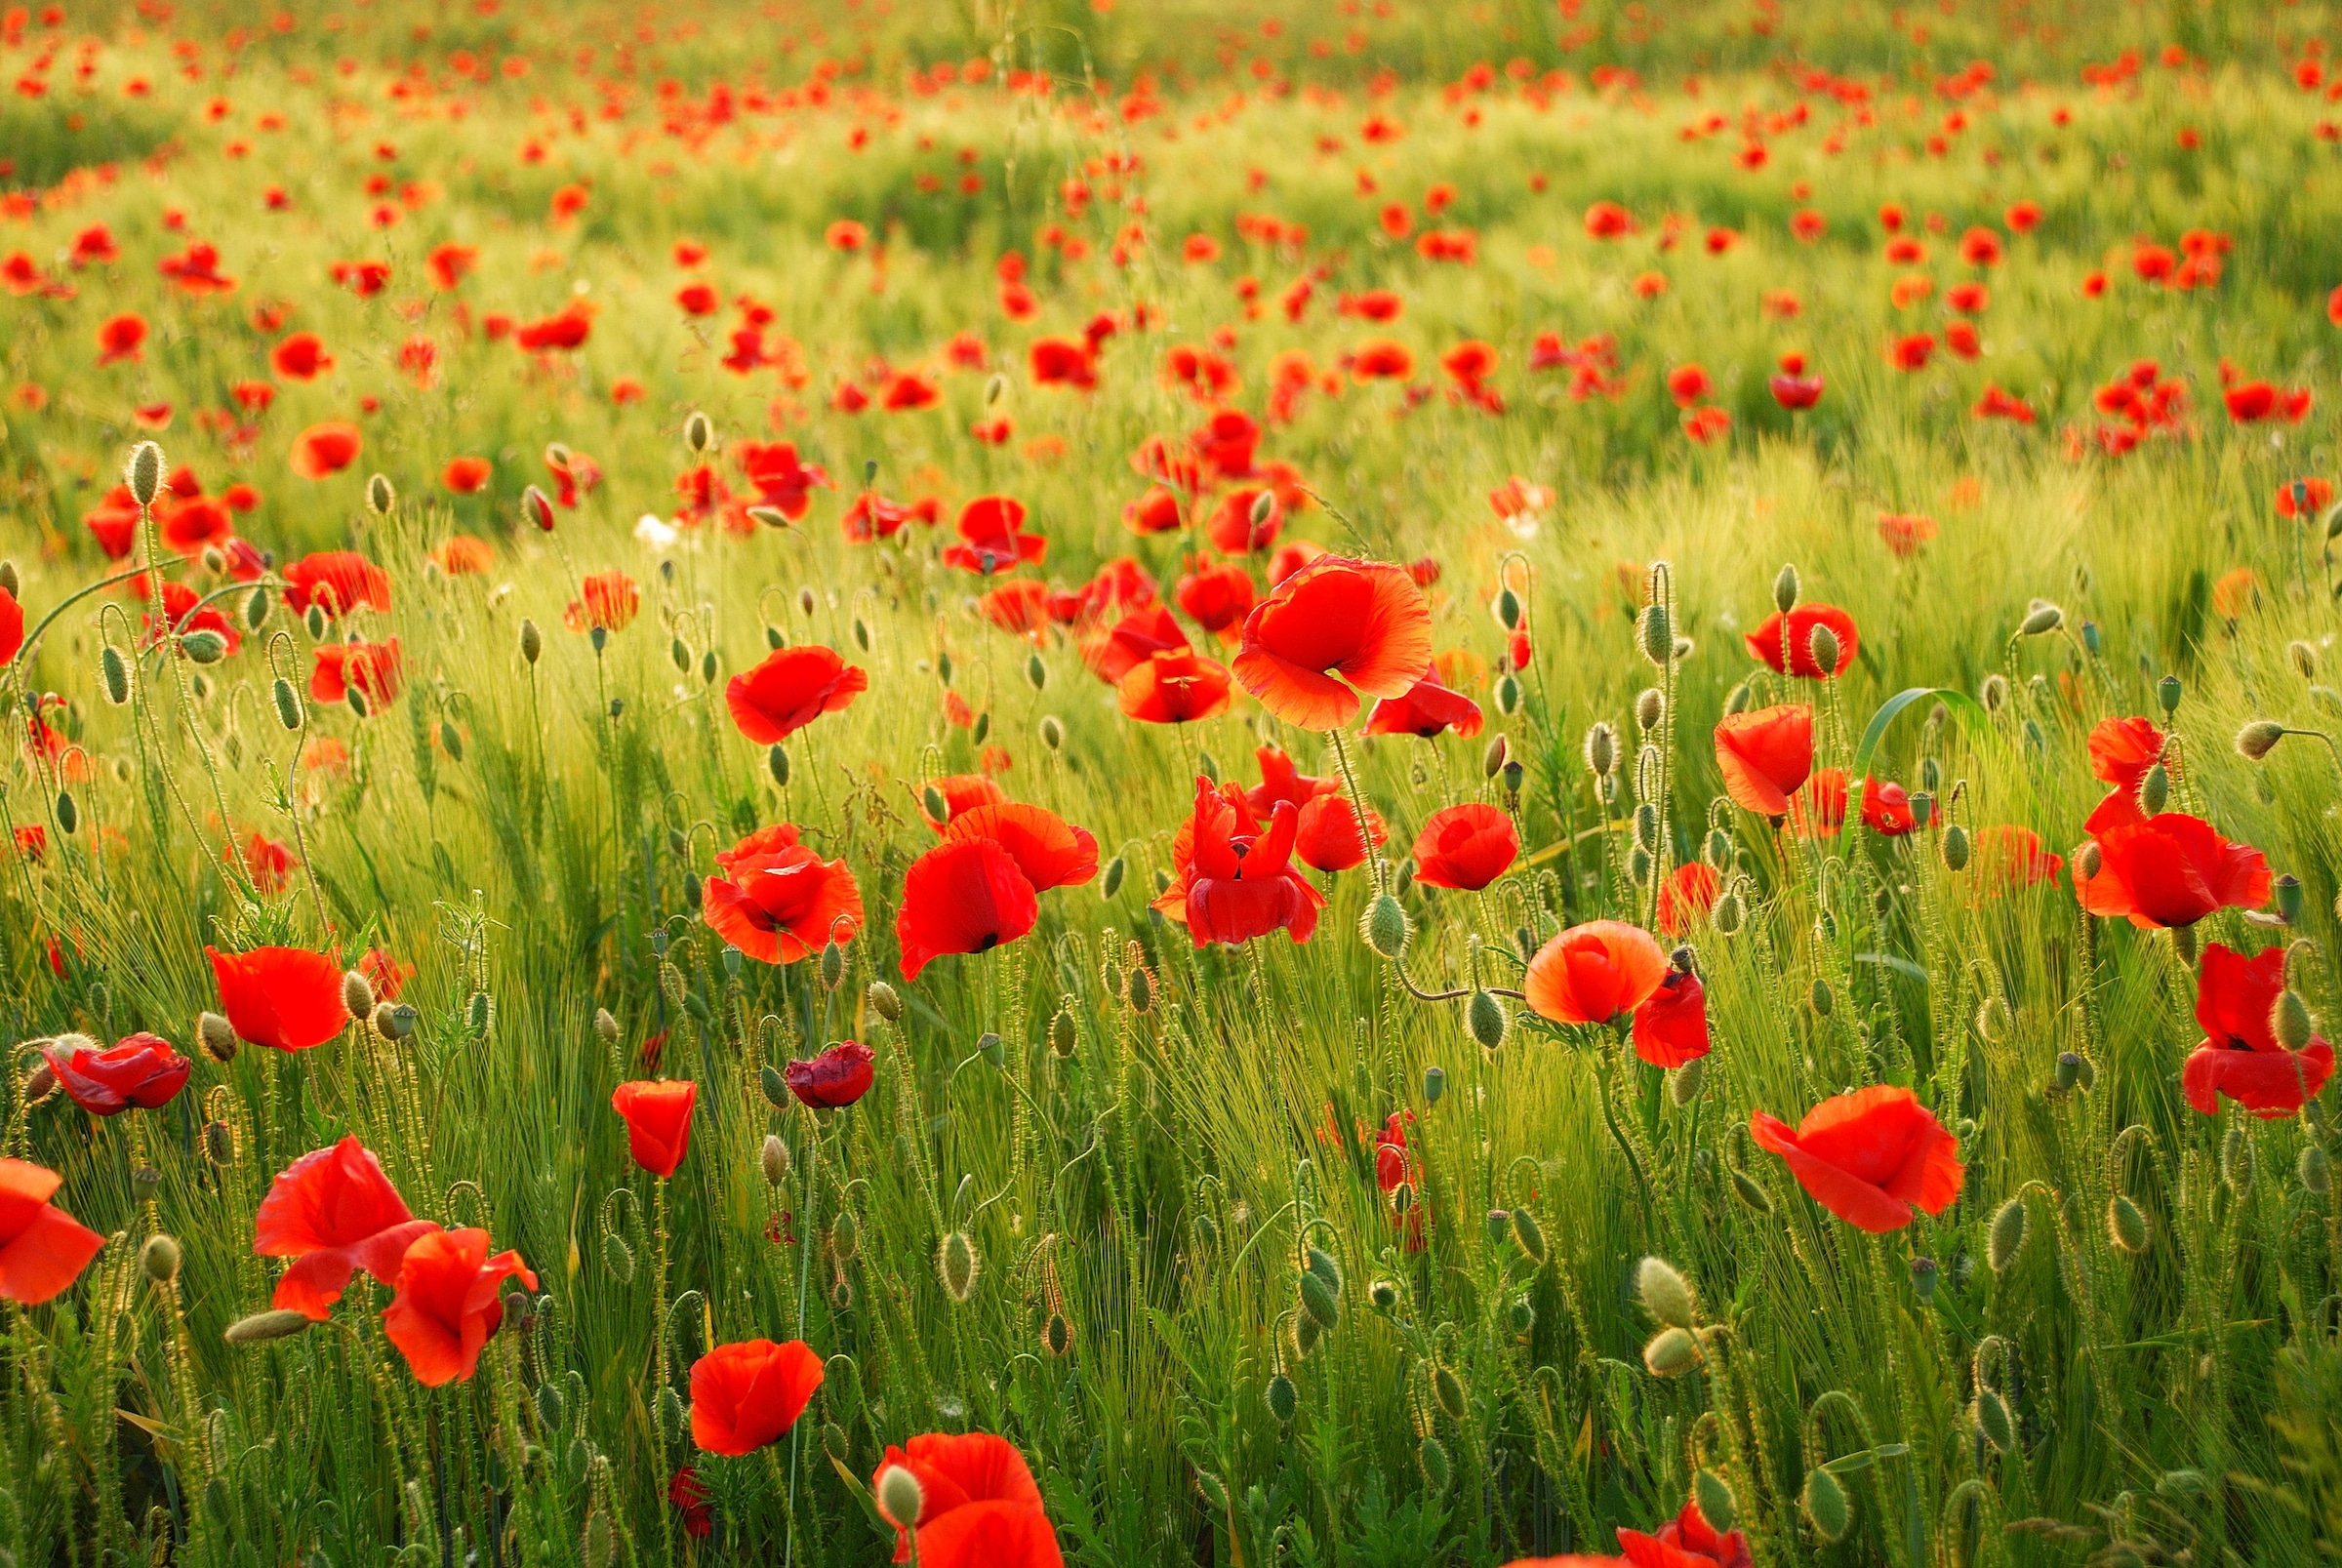 Fototapete »Field of Poppies«